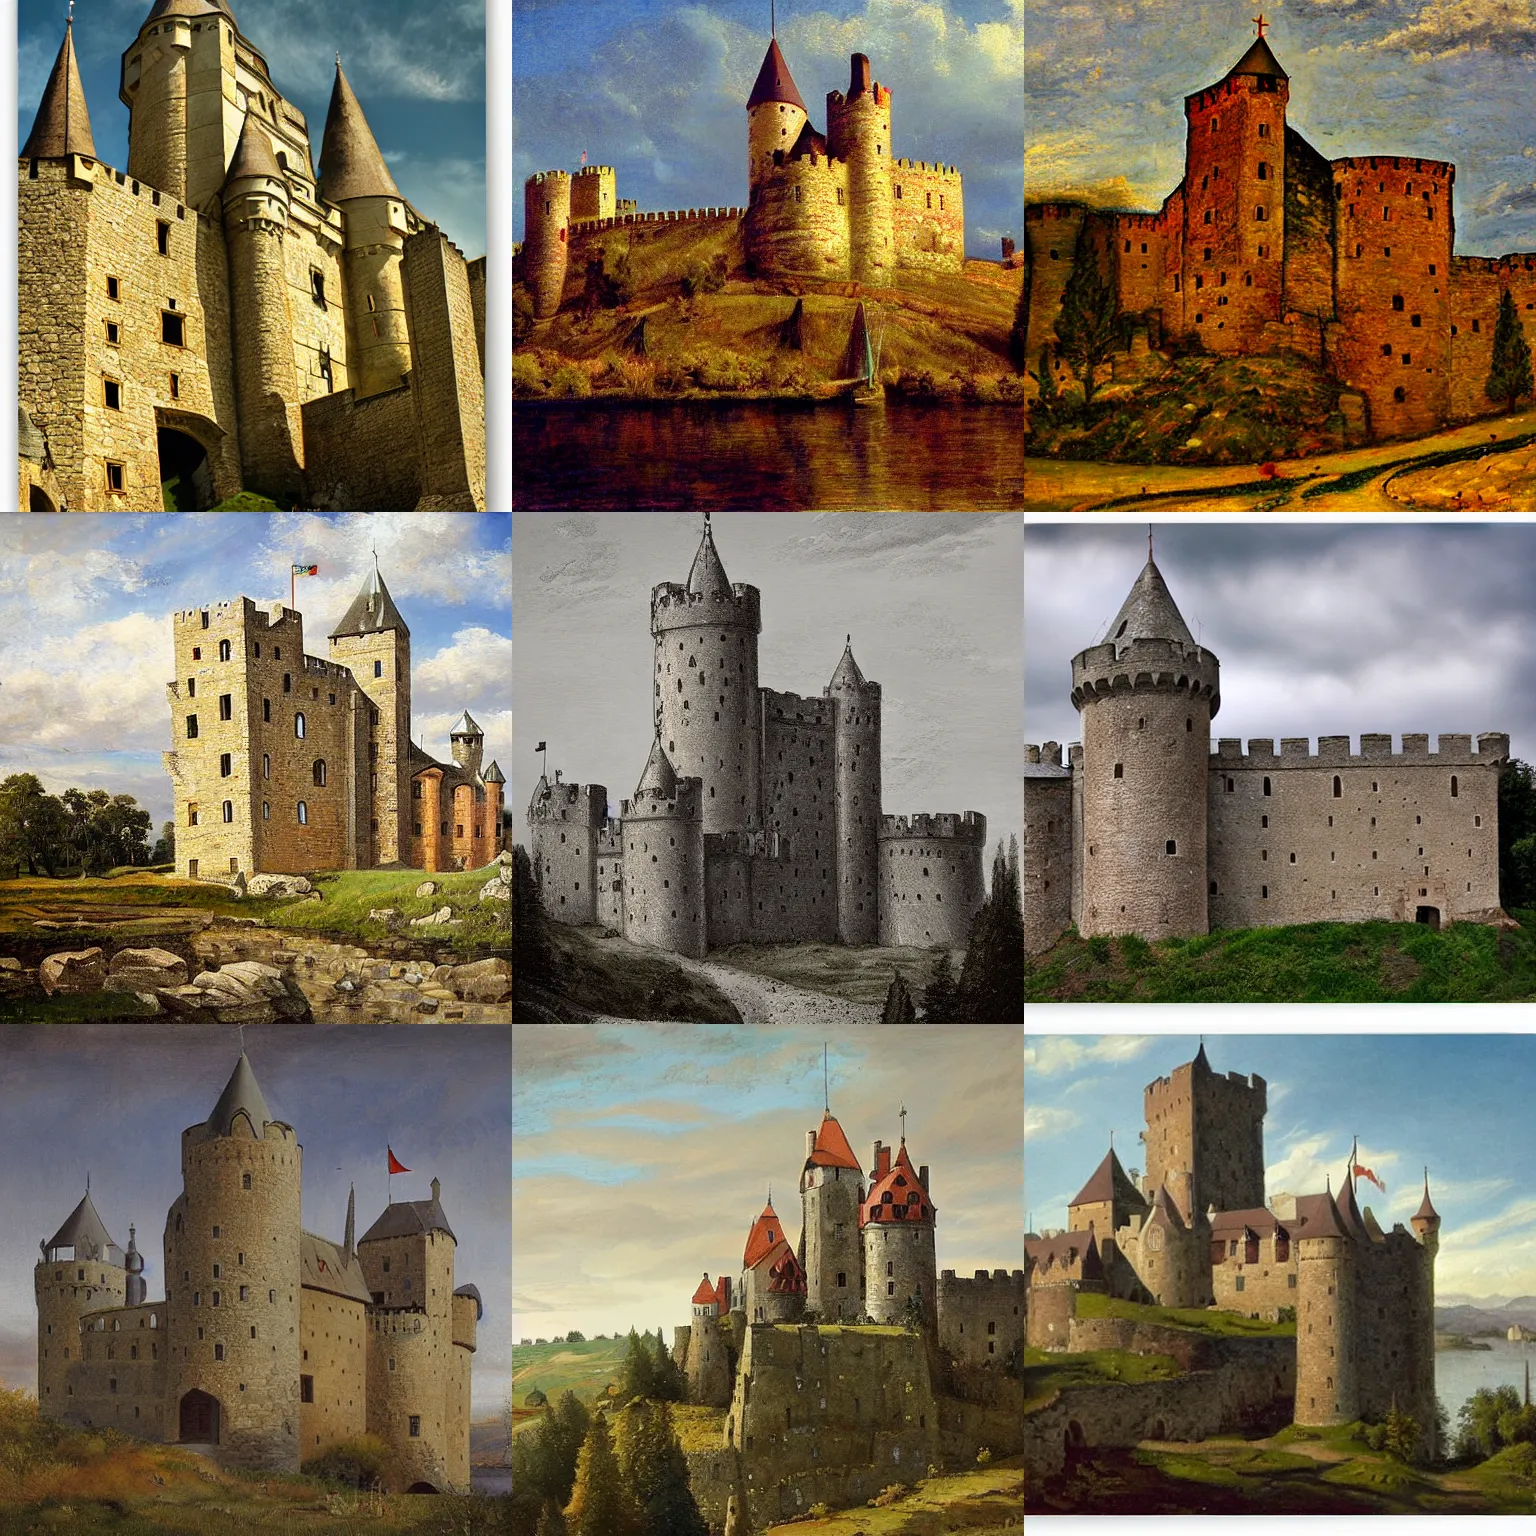 Prompt: medieval castle, by einer johansen